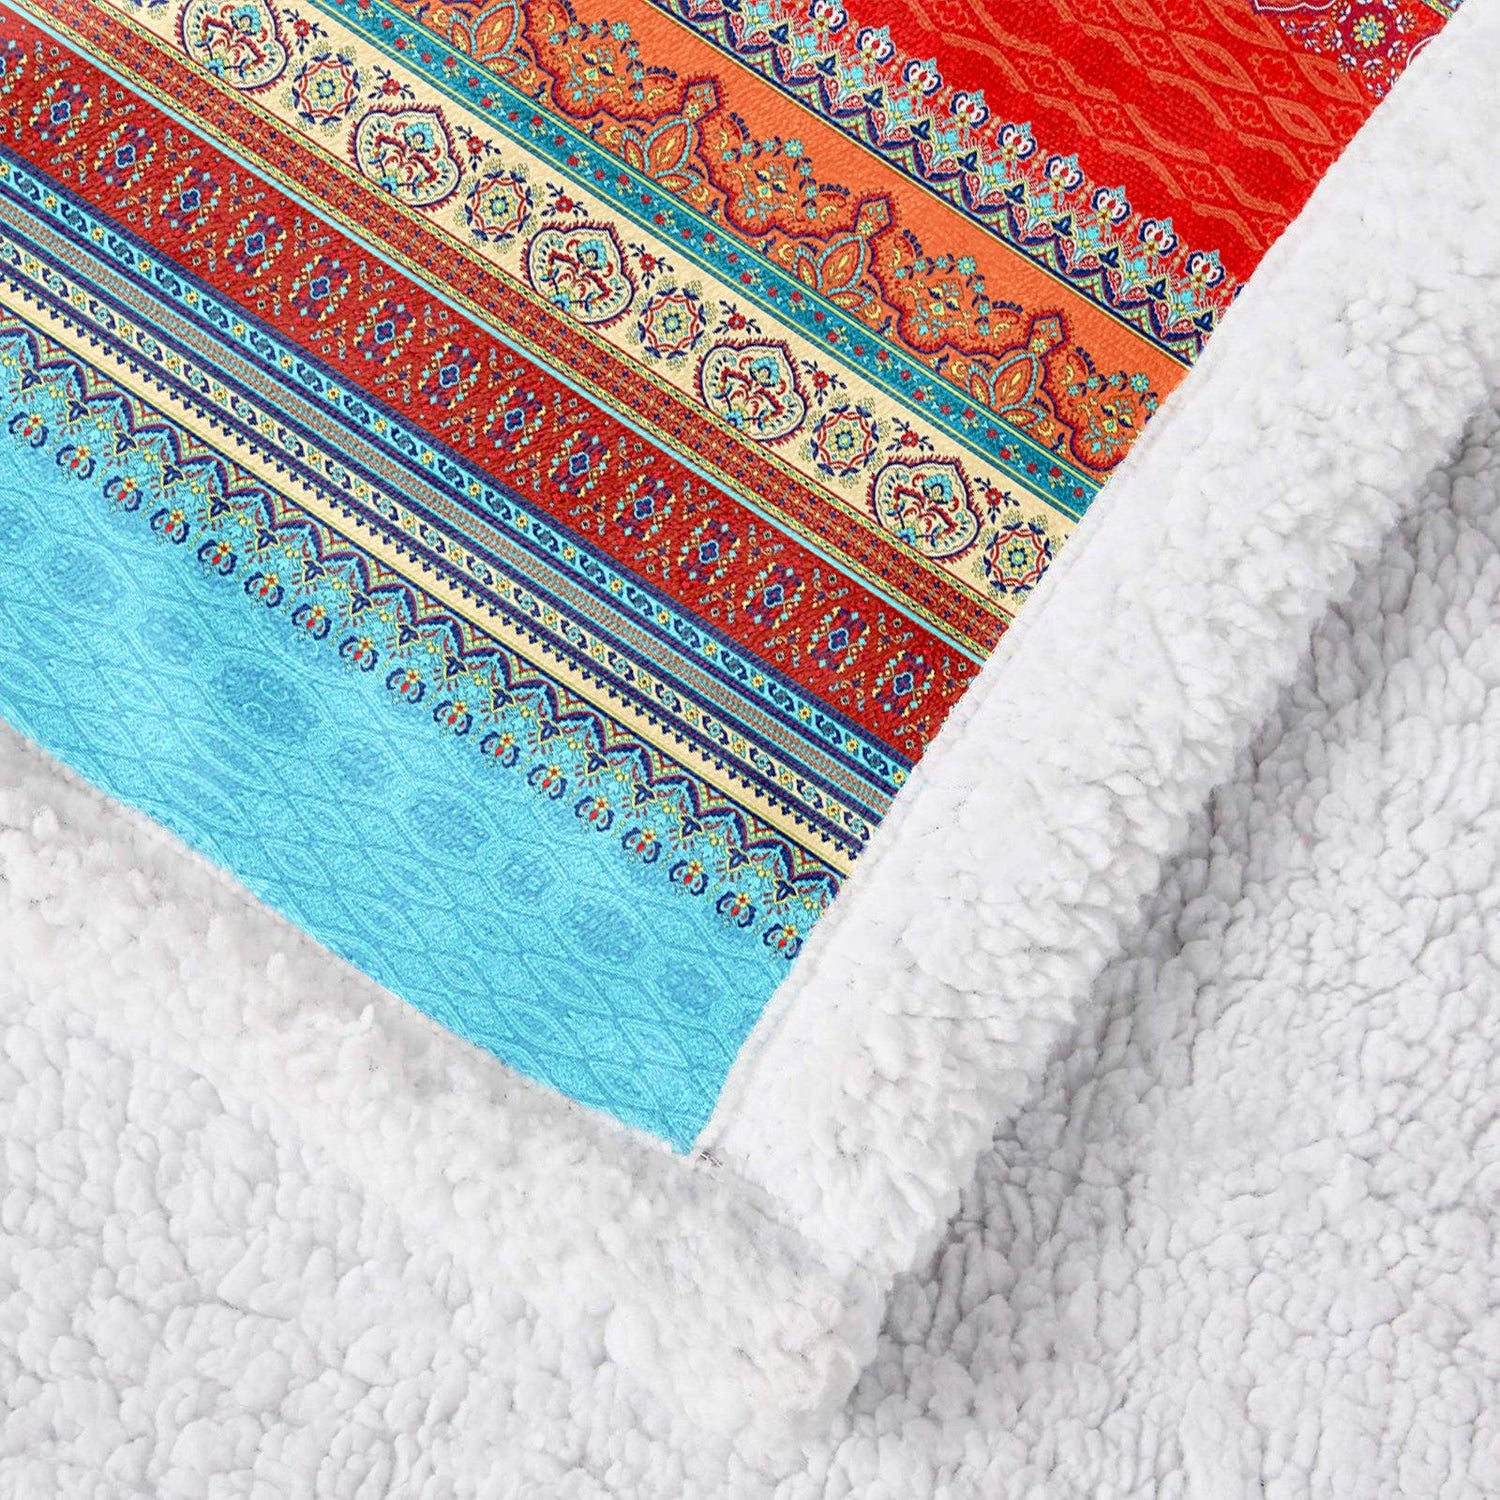 WONGS BEDDING Bohemian Design Blanket - Wongs bedding